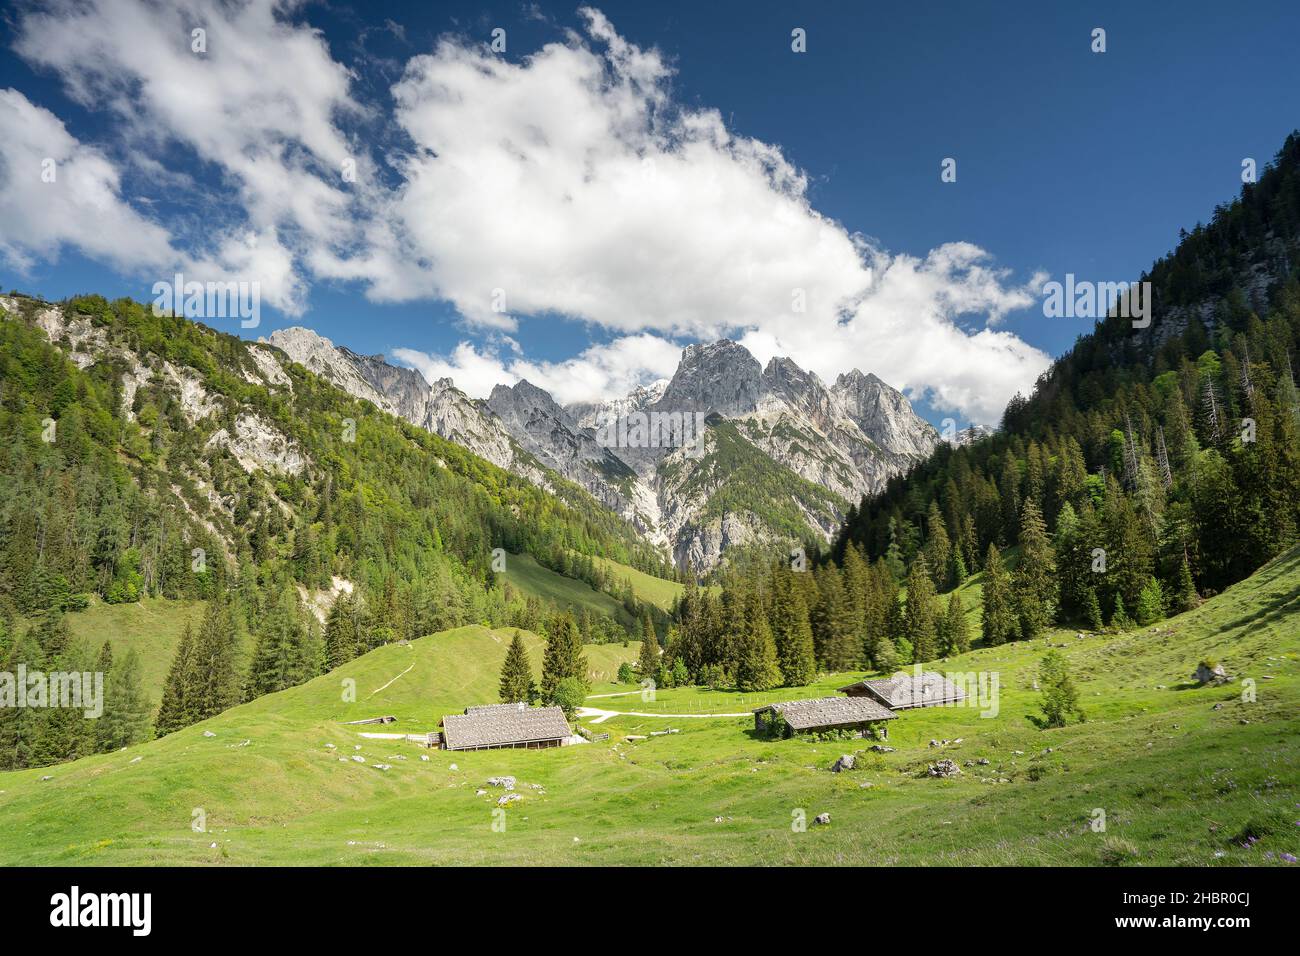 im Gebiet der Bindalm mit den Mühlsturzhörnern im Hintergrund im Nationalpark Berchtesgadenener Land, eine wunderbare Wanderung durch herrliche Almen Stock Photo